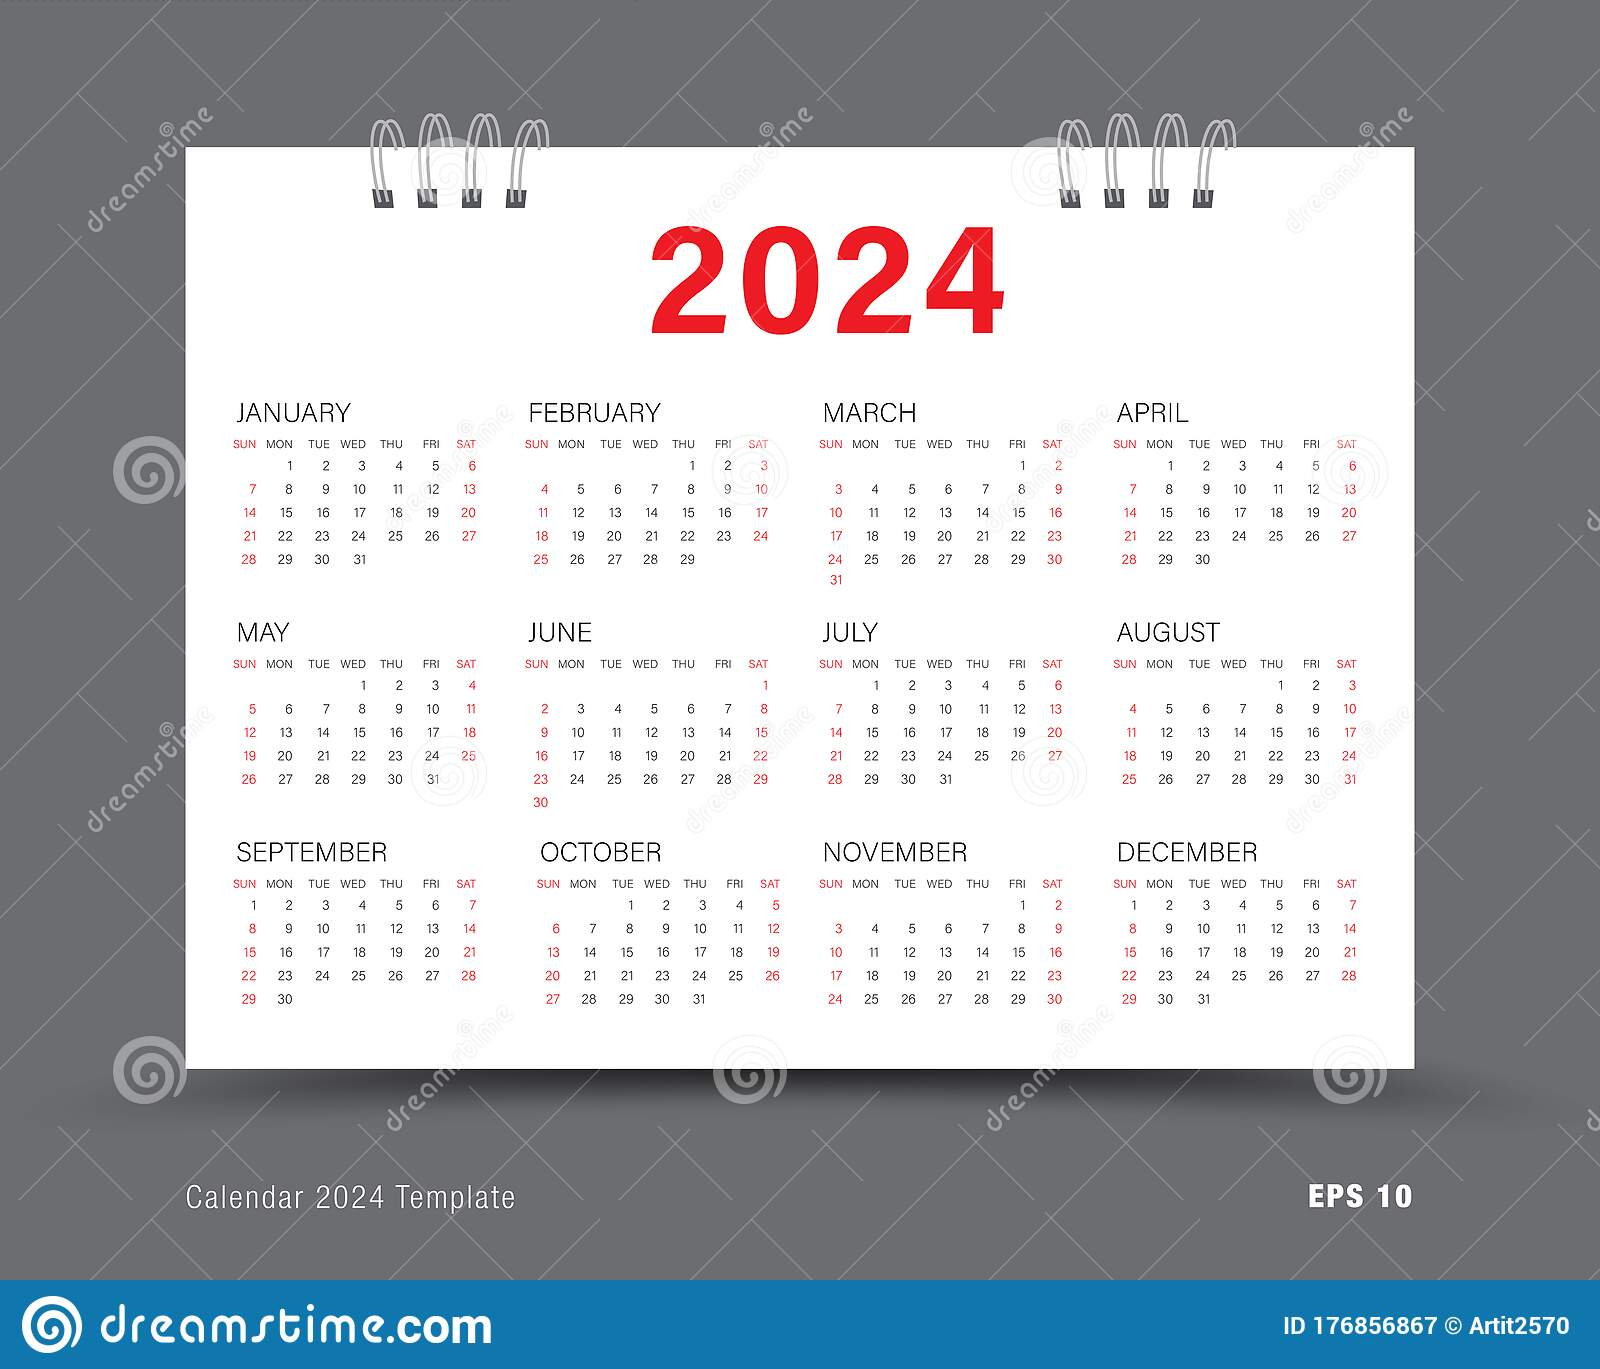 Waterproof Calendar 2024 - 2024 Calendar Printable